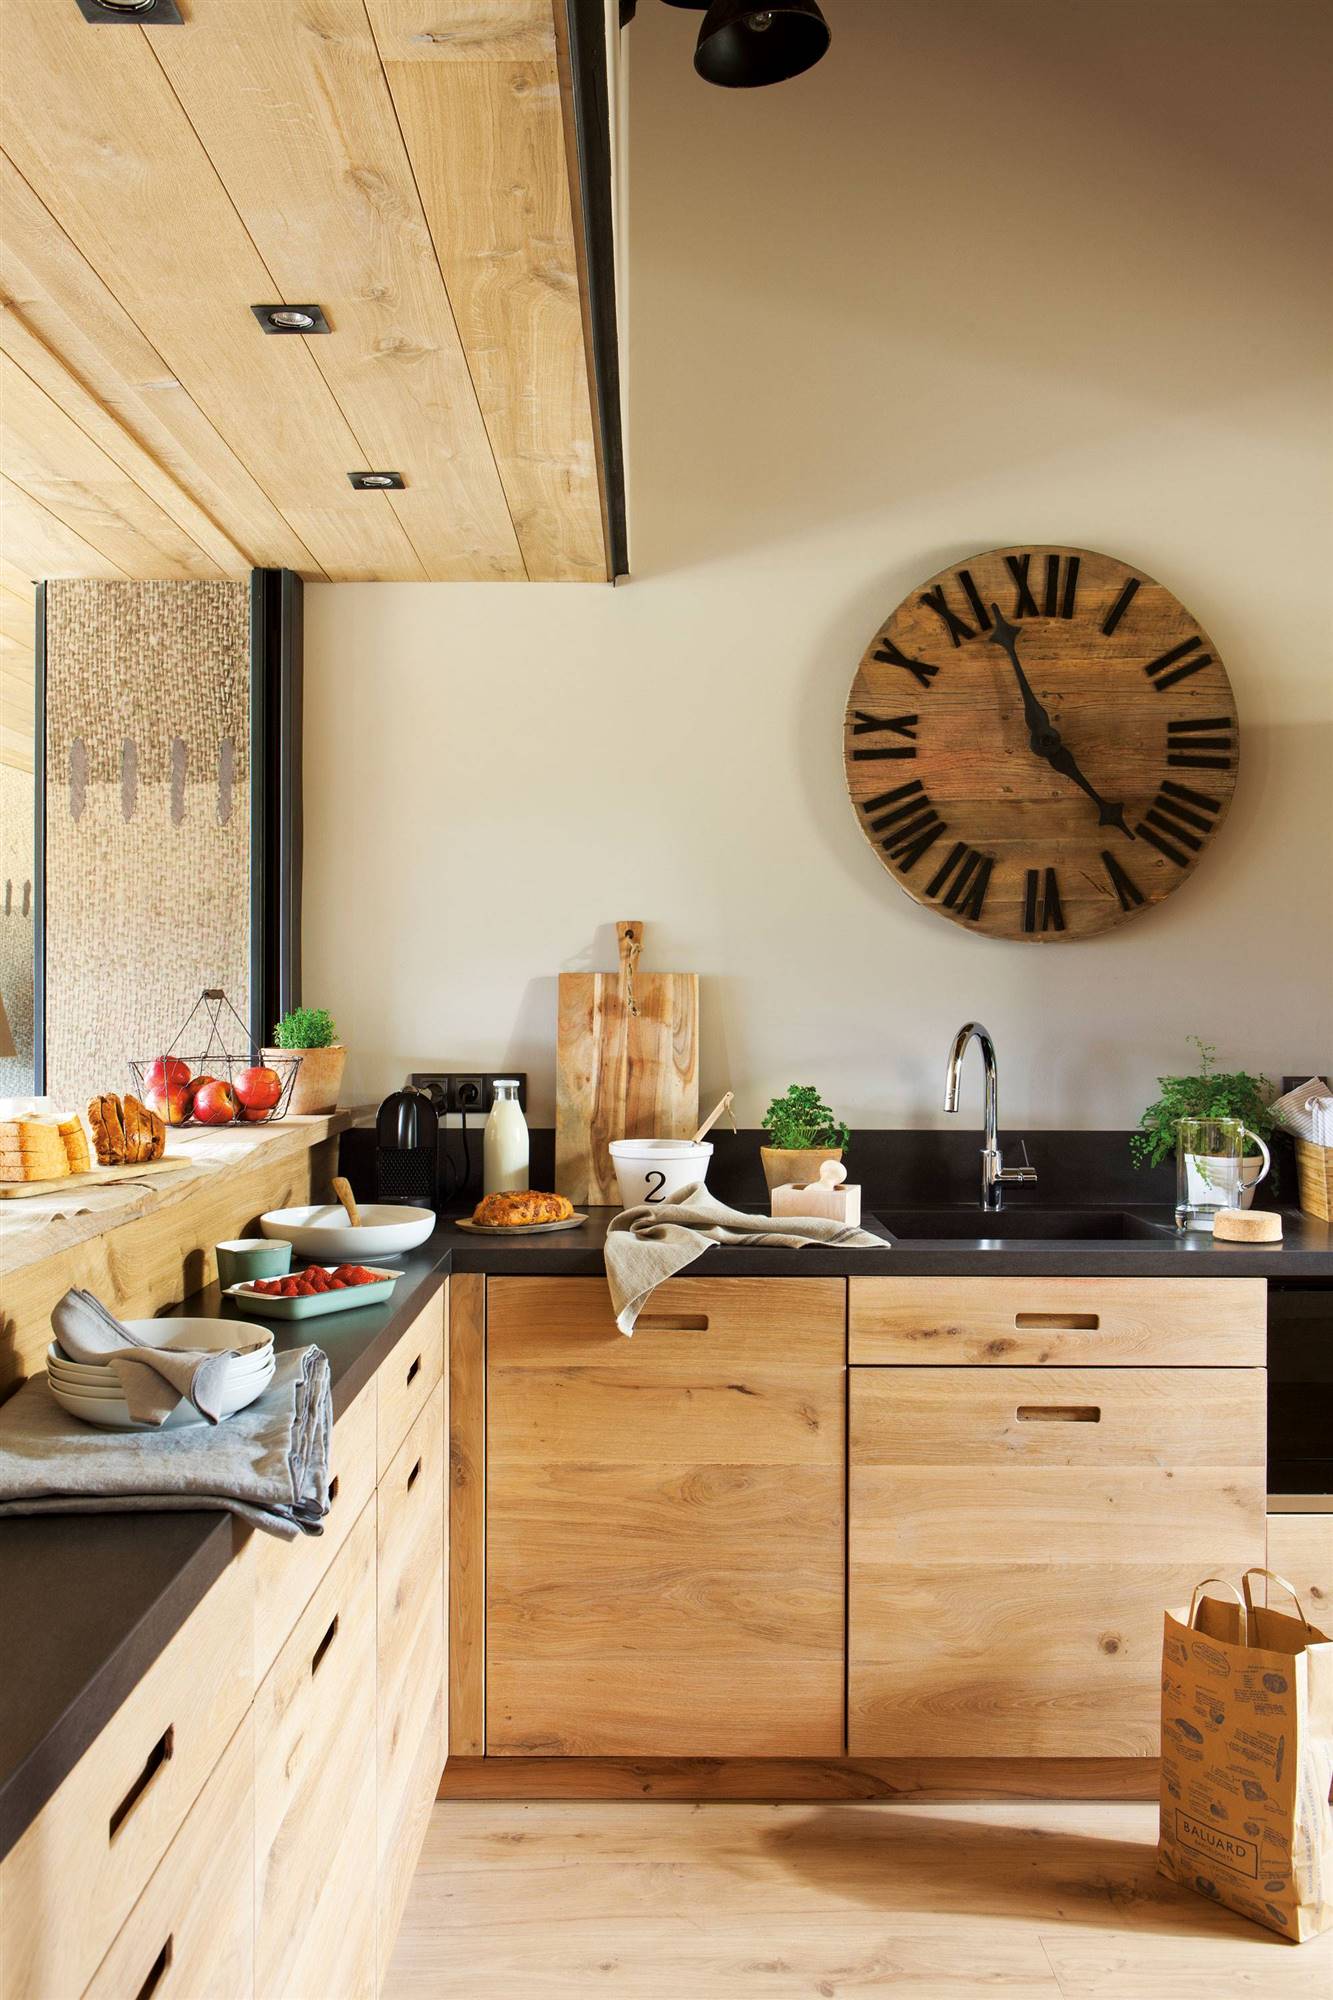 Moderna cocina con mobiliario diseñado a medida en madera, encimera en negro y gran reloj en la pared. 